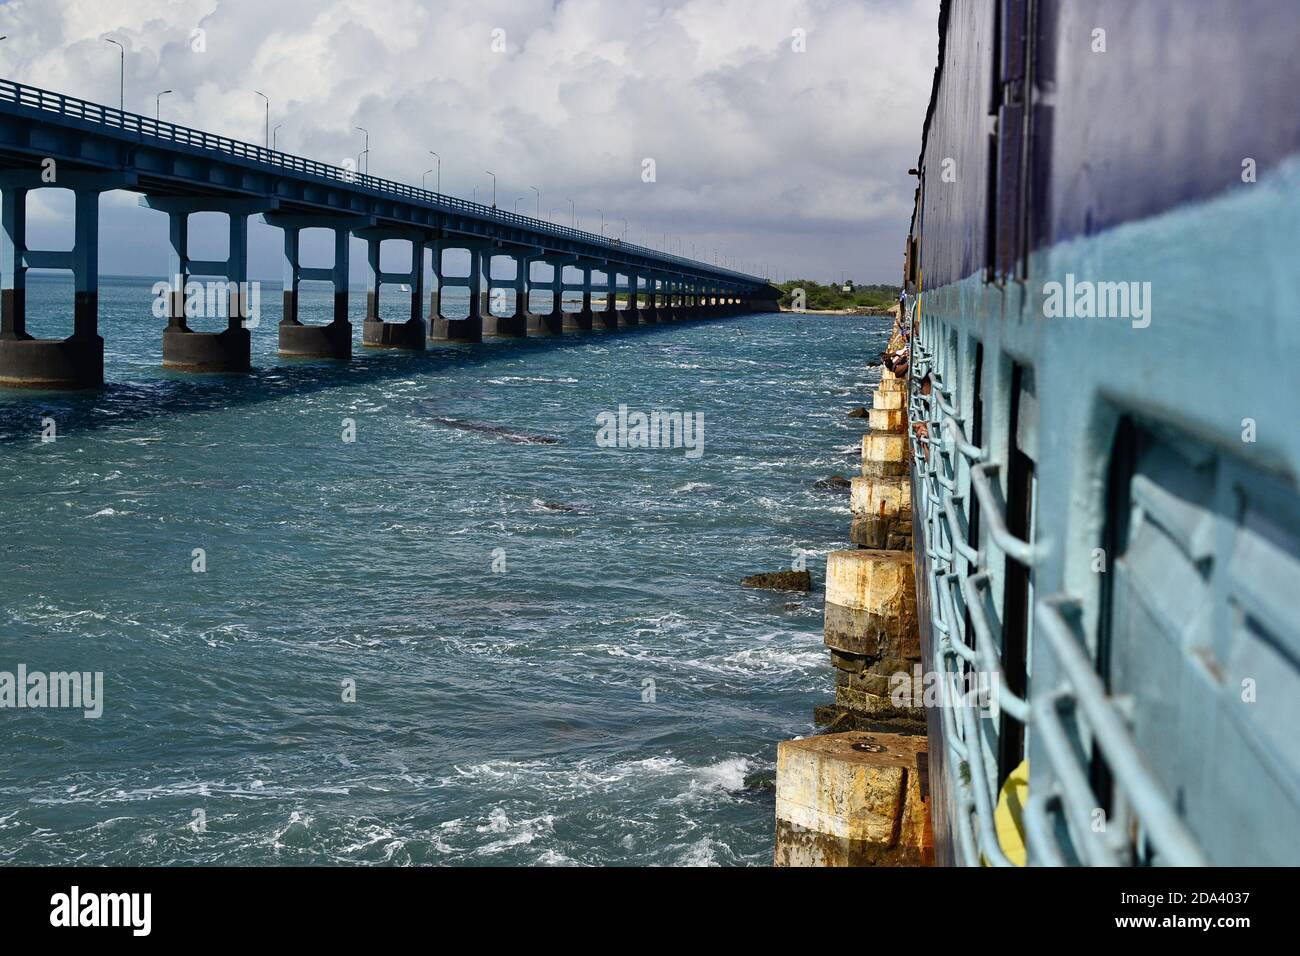 Indische Eisenbahn-Zug auf der Eisenbahnbrücke über das Meer genannt Pamban-Brücke. Es verbindet Rameswaram auf der Insel mit dem Festland. Lange Straßenbrücke Stockfoto